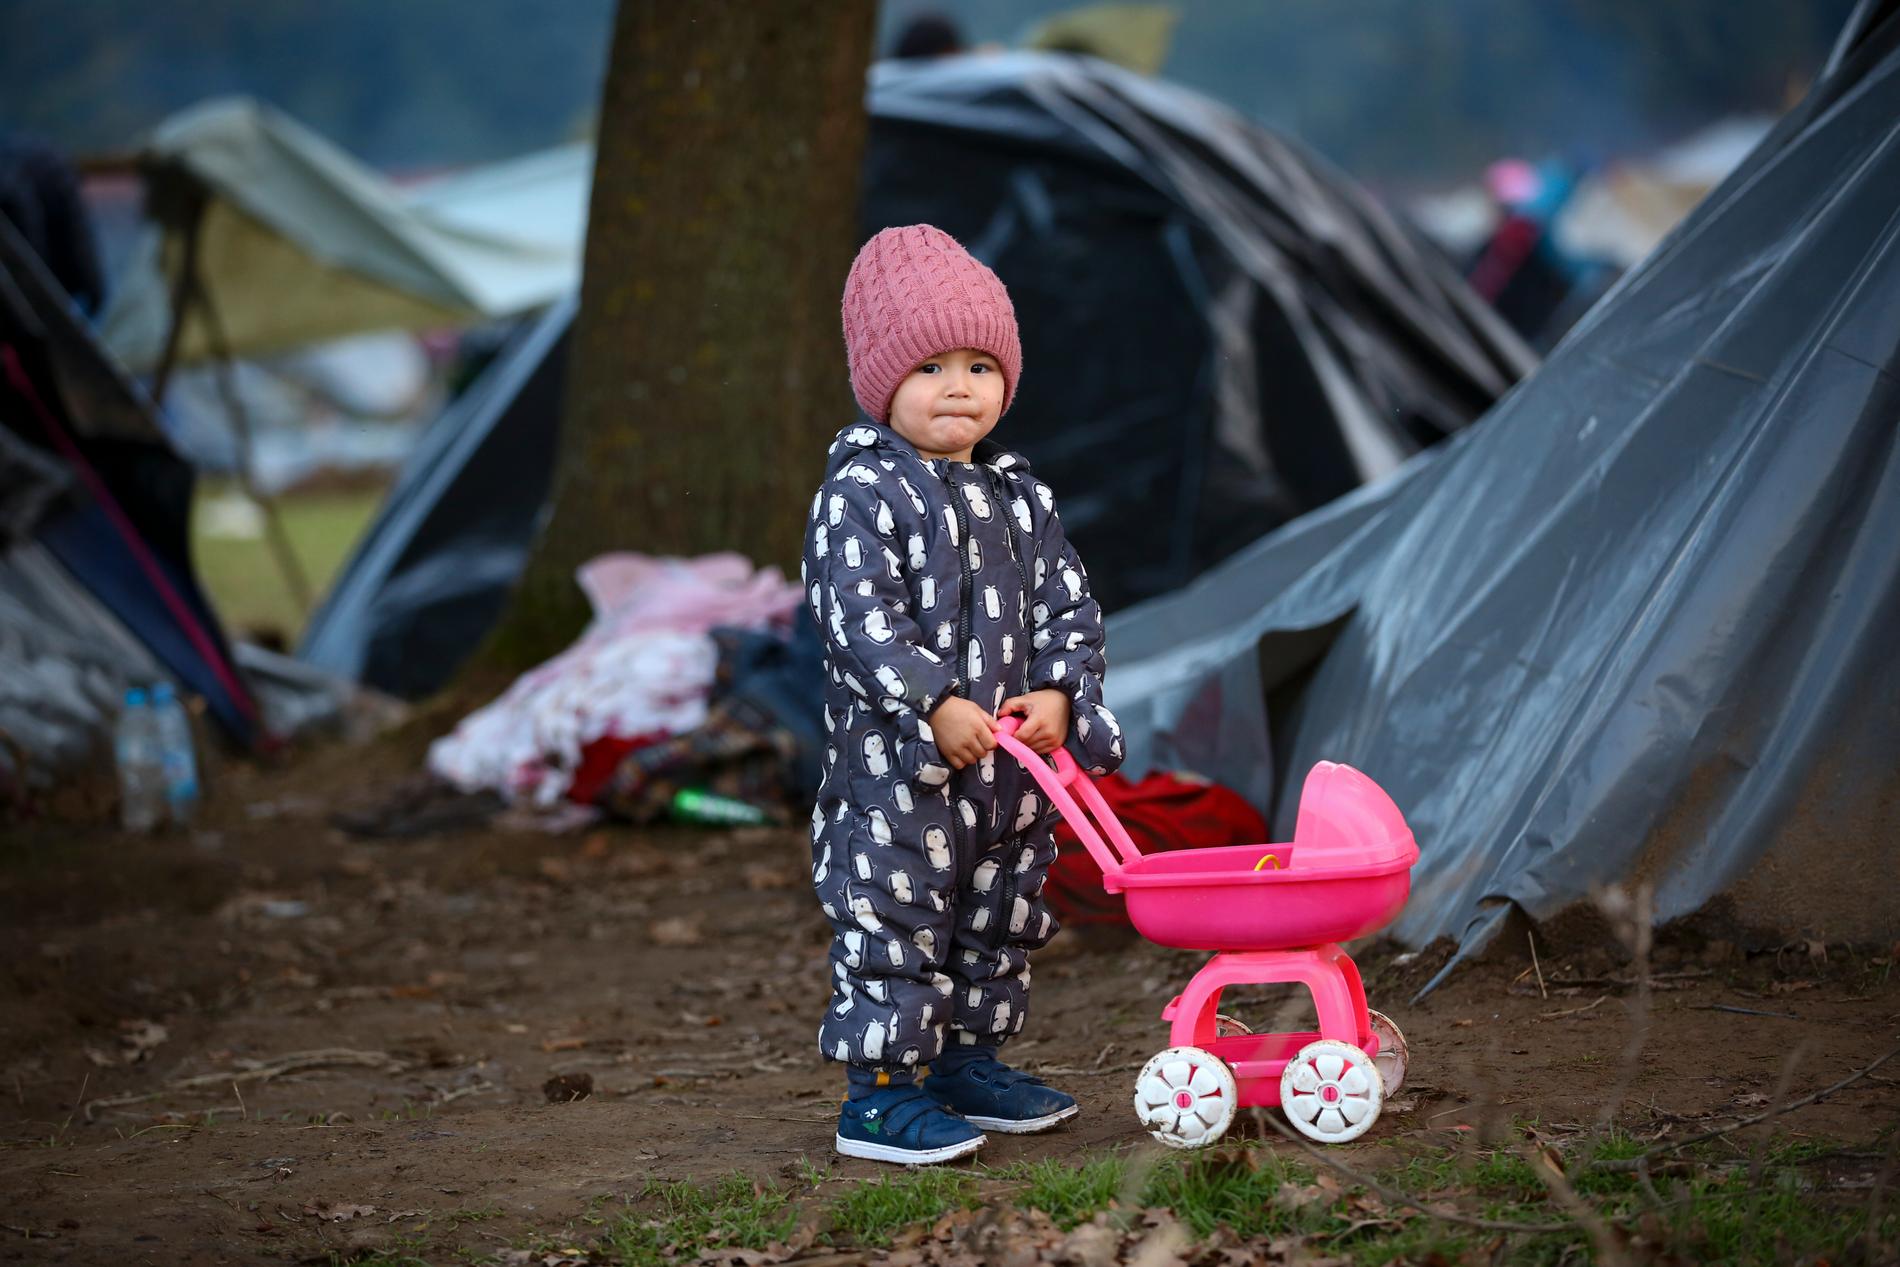 Nesten fem millioner afghanere er i dag på flukt utenfor landets grenser, blant dem denne lille jenten som lever sammen med foreldrene i en provisorisk leir i Velika Kladusa i Bosnia. 